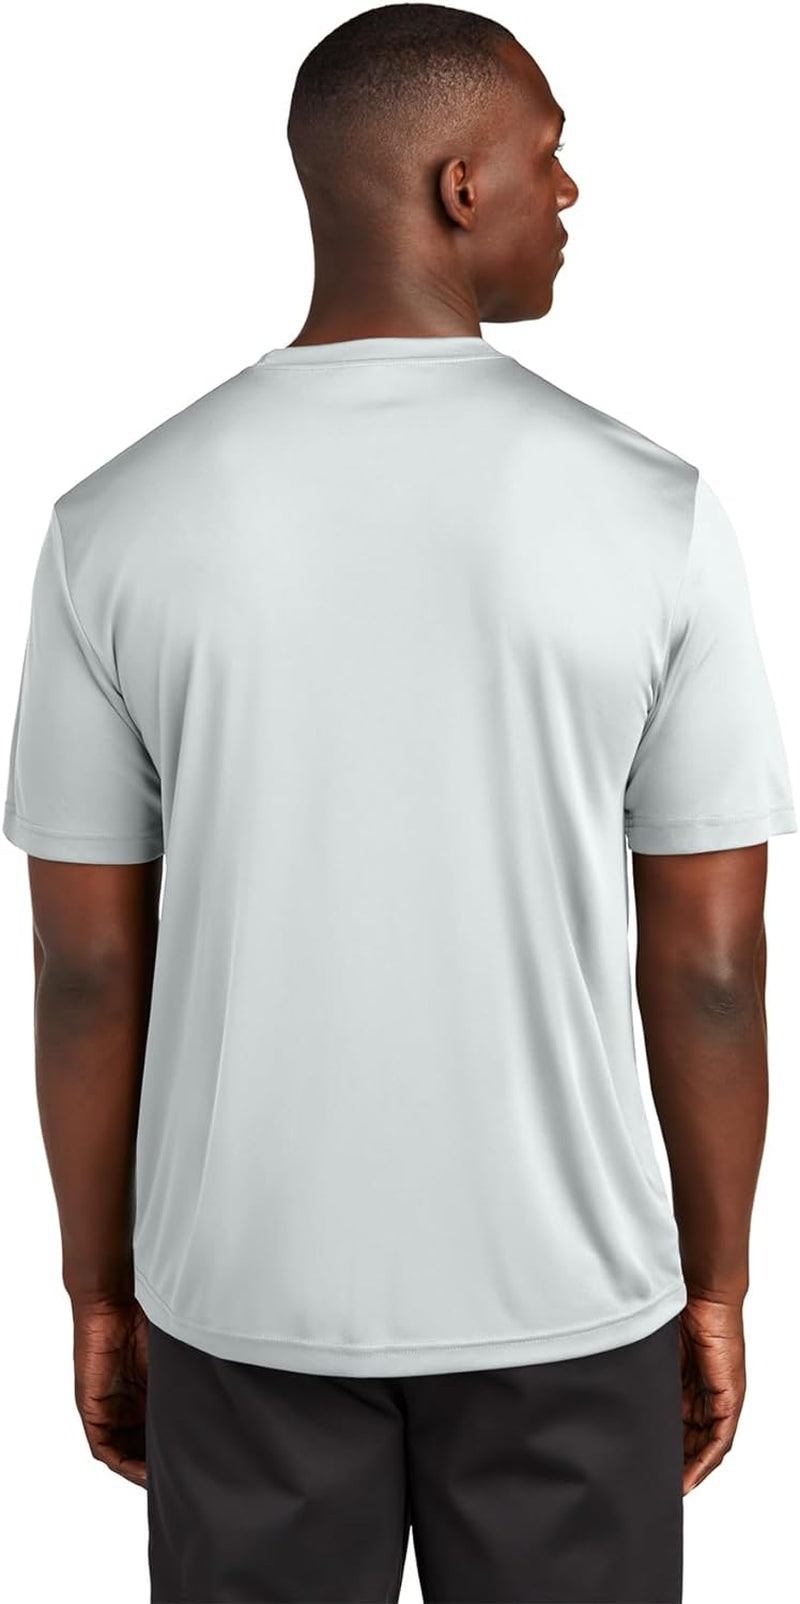 Men'S Short Sleeve Moisture Wicking Athletic T-Shirt